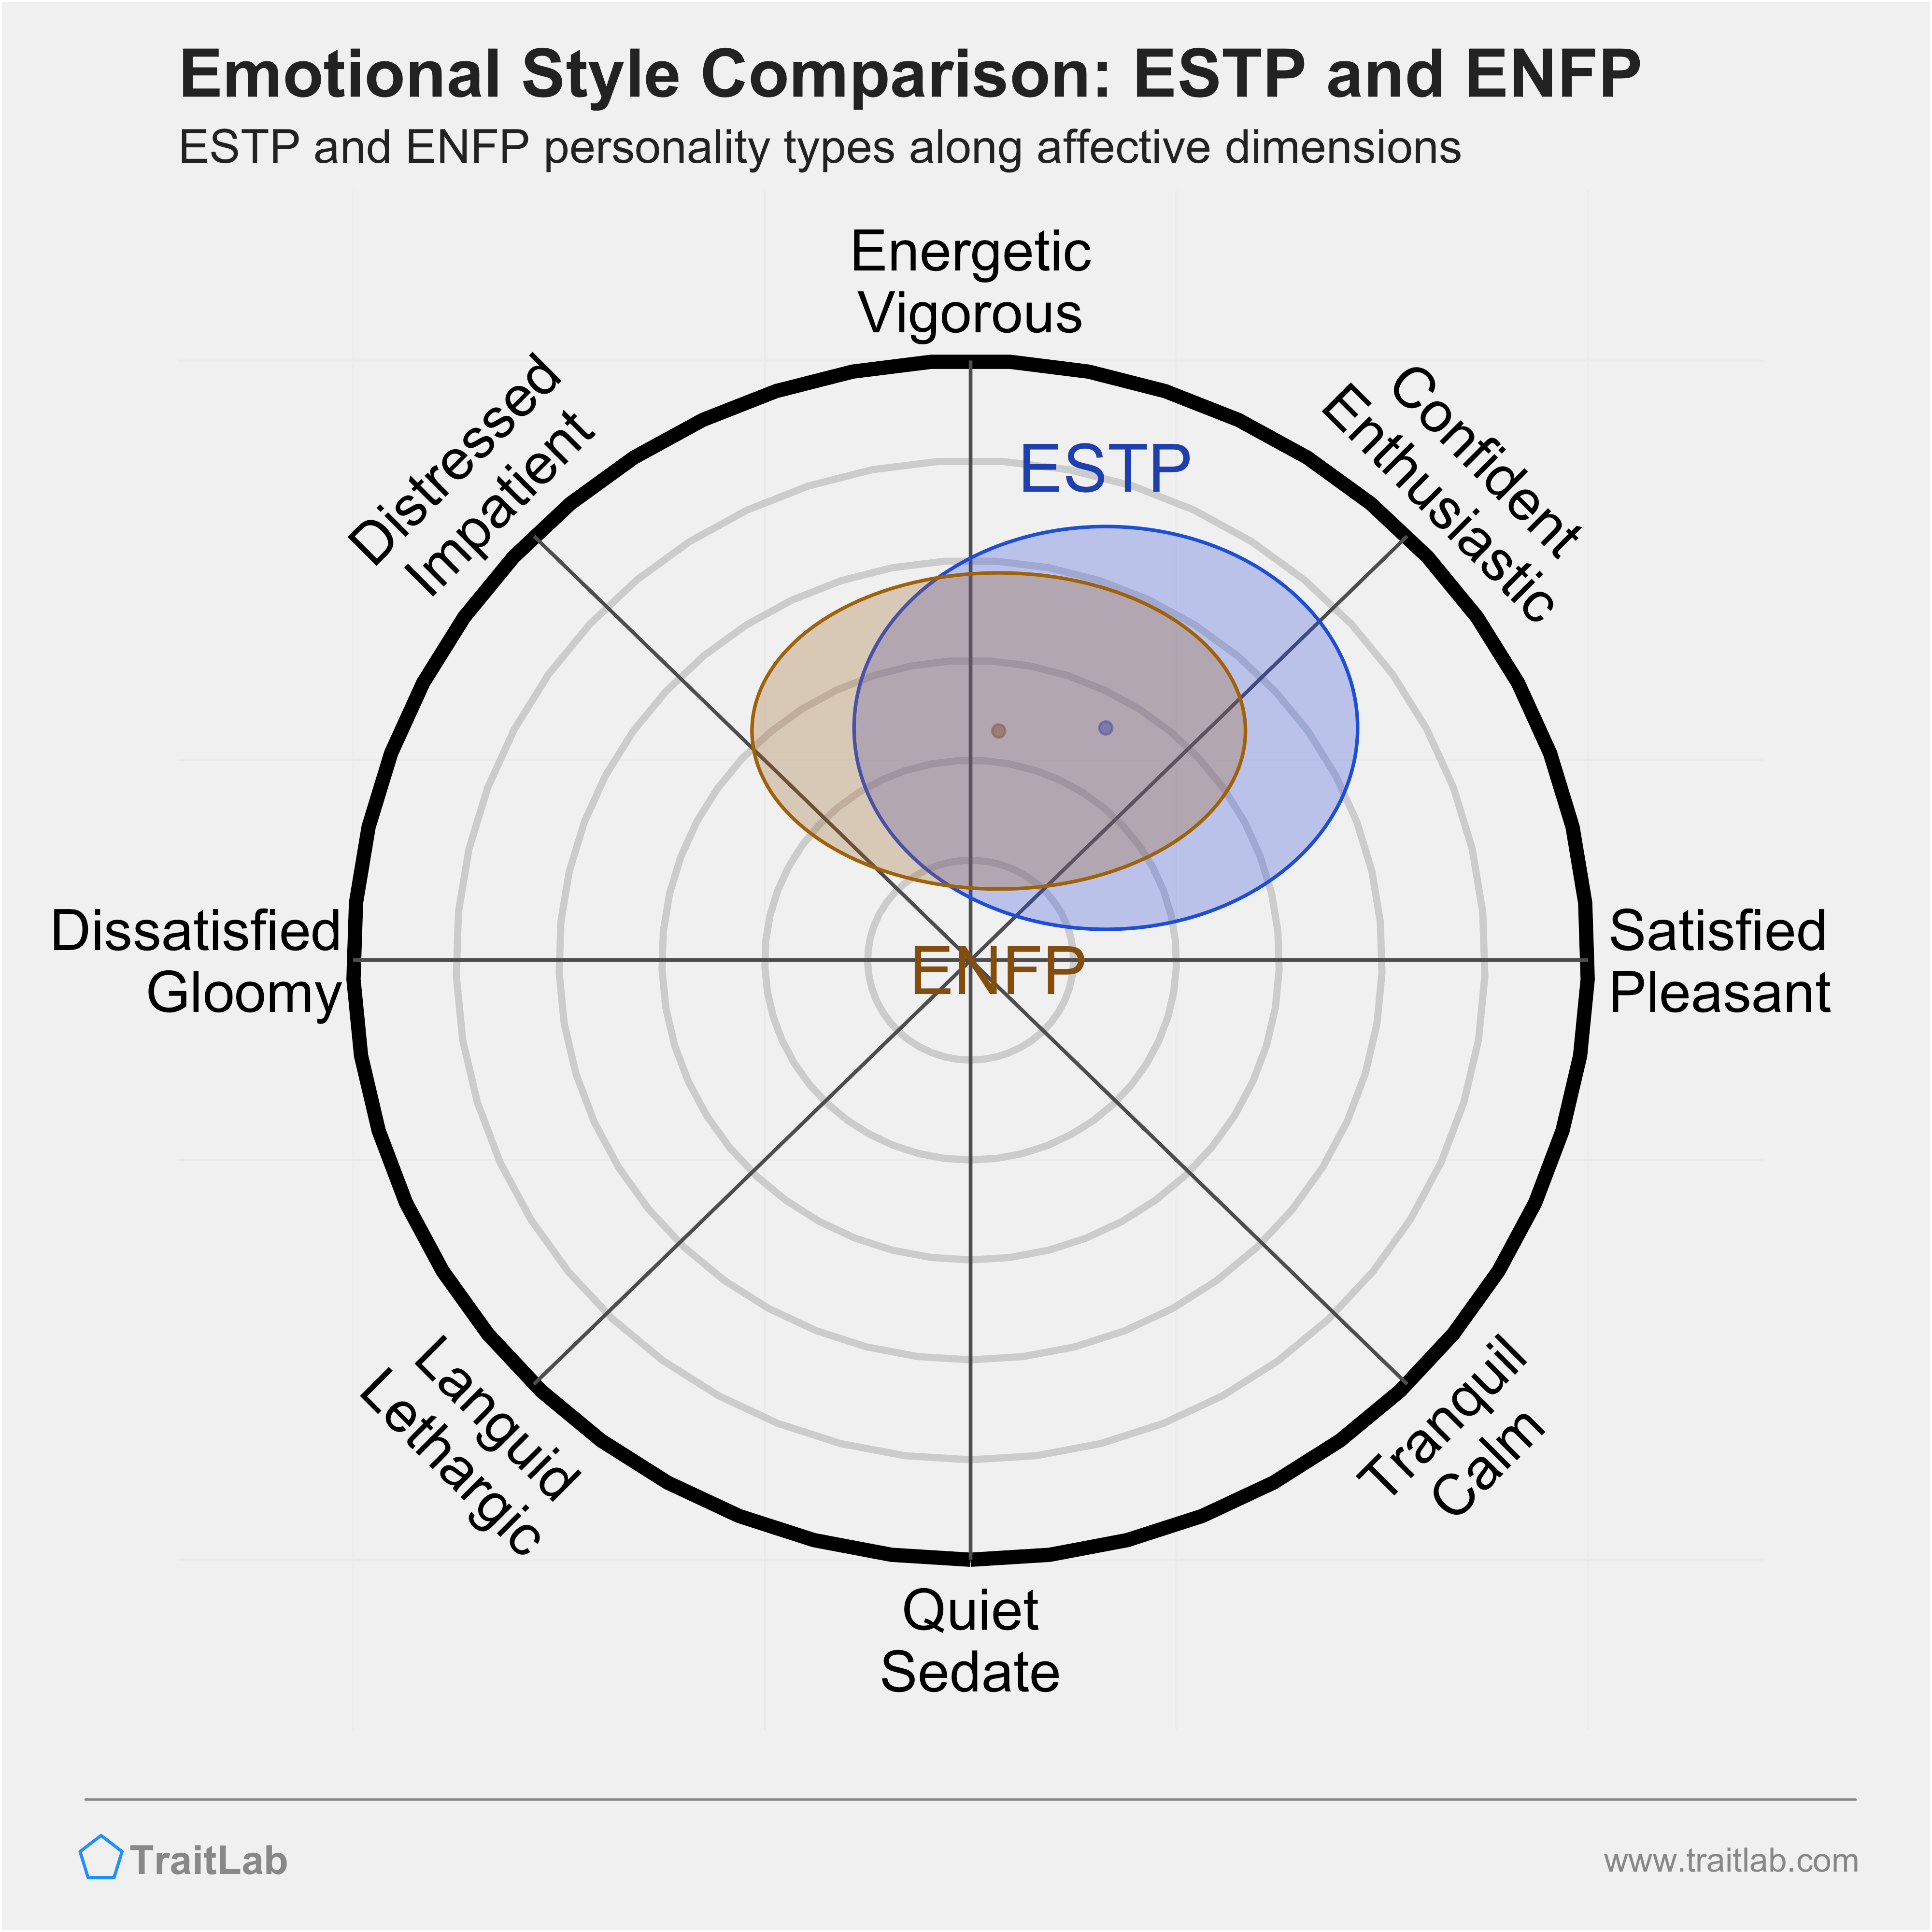 ESTP and ENFP comparison across emotional (affective) dimensions